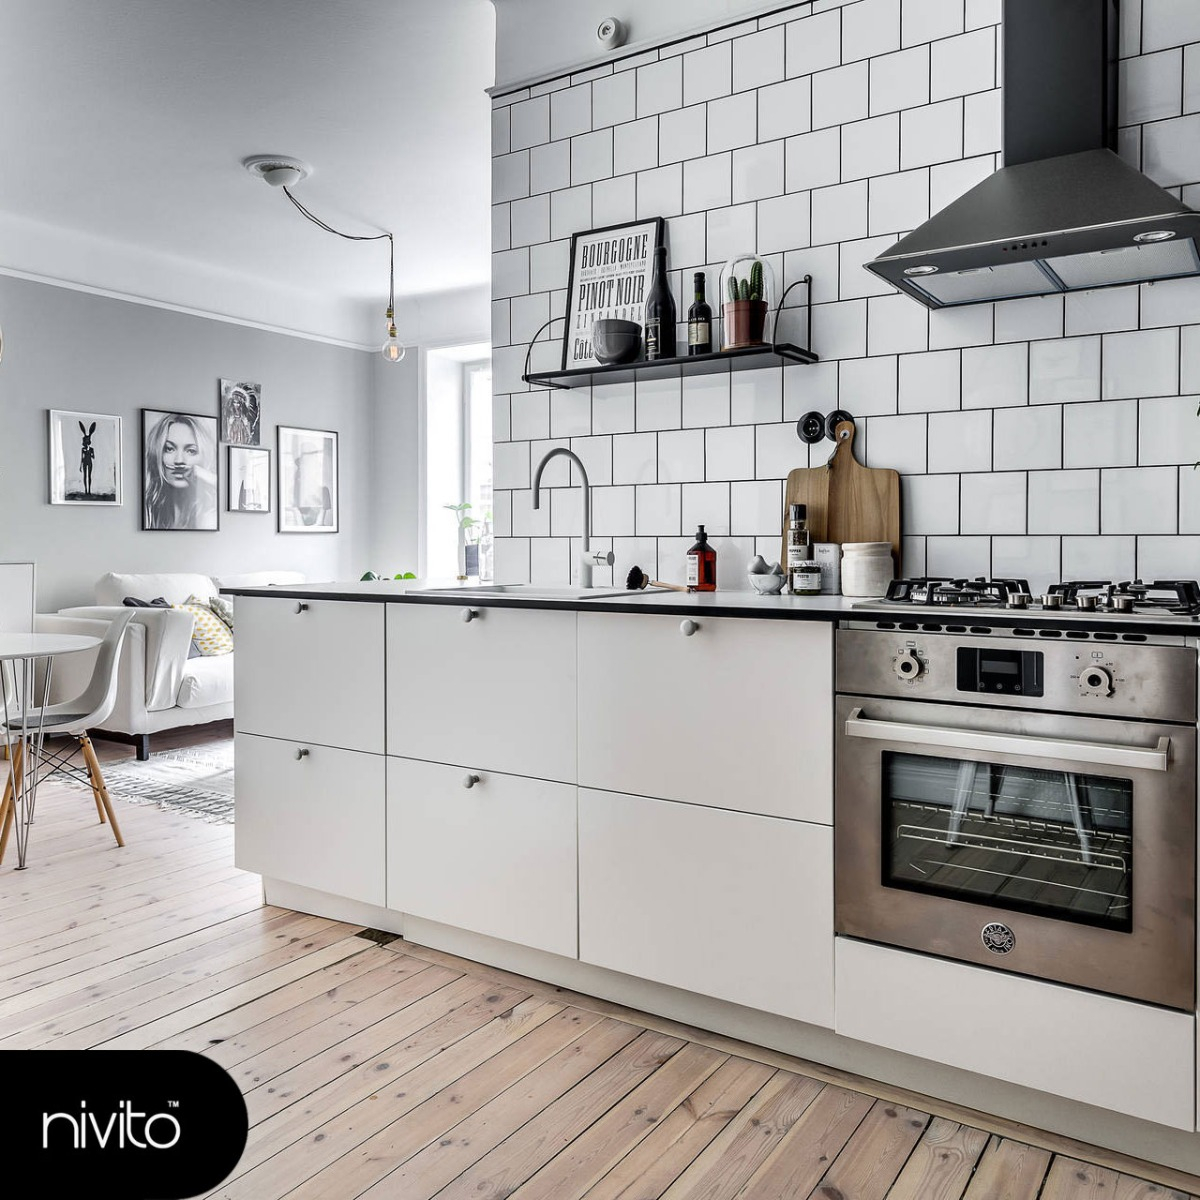 White Kitchen Tap - Nivito RH-130